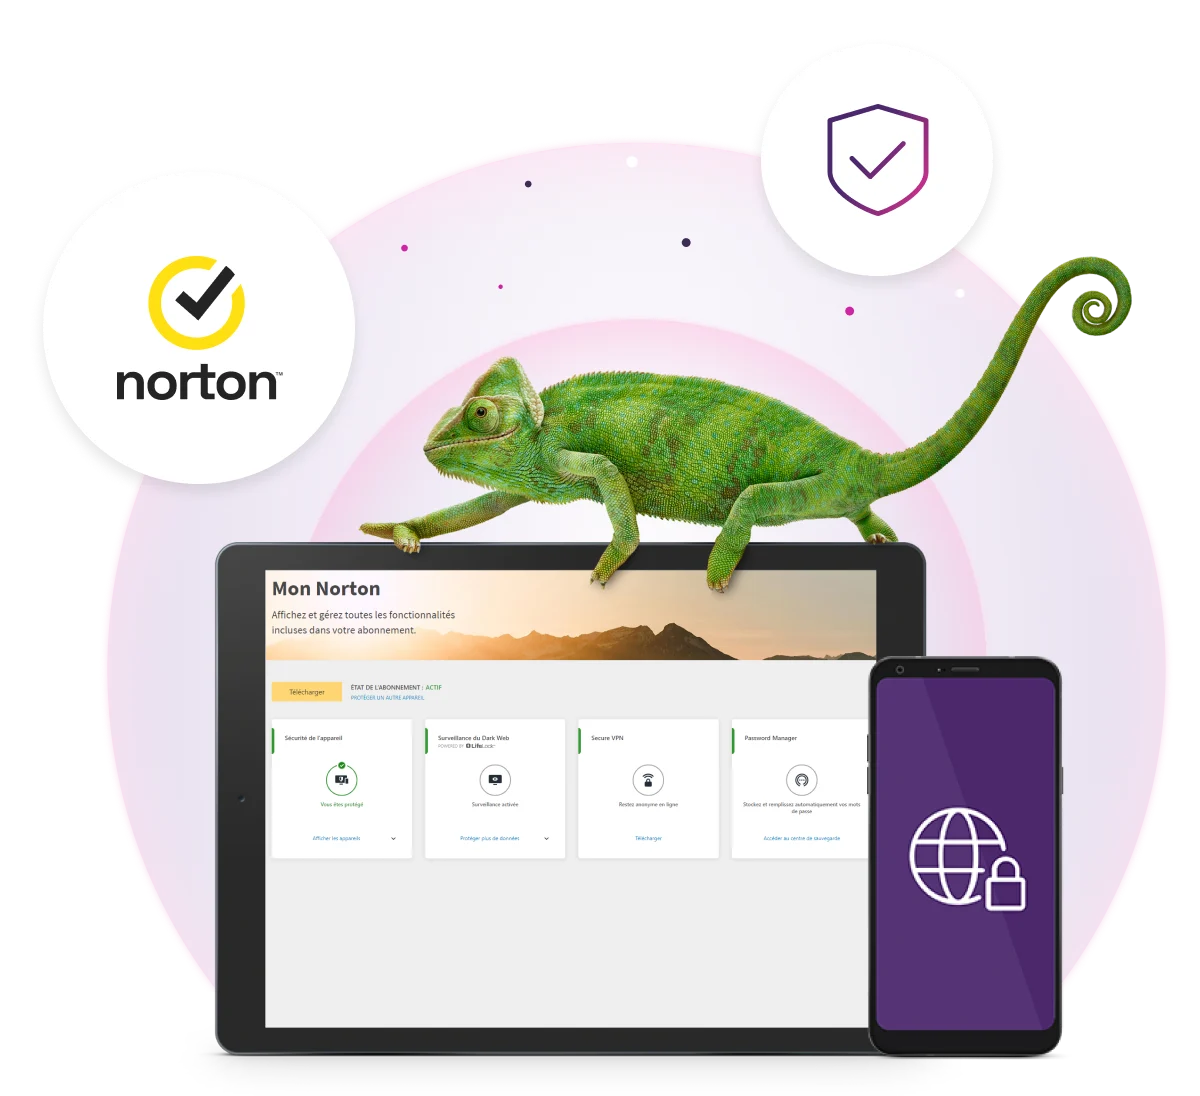 Un écran de tablette sur Protection numérique de TELUS affiche la protection de l’appareil, la Surveillance du Dark Web (Web clandestin), le RPV sécurisé, le Gestionnaire de mots de passe et le logo Norton.